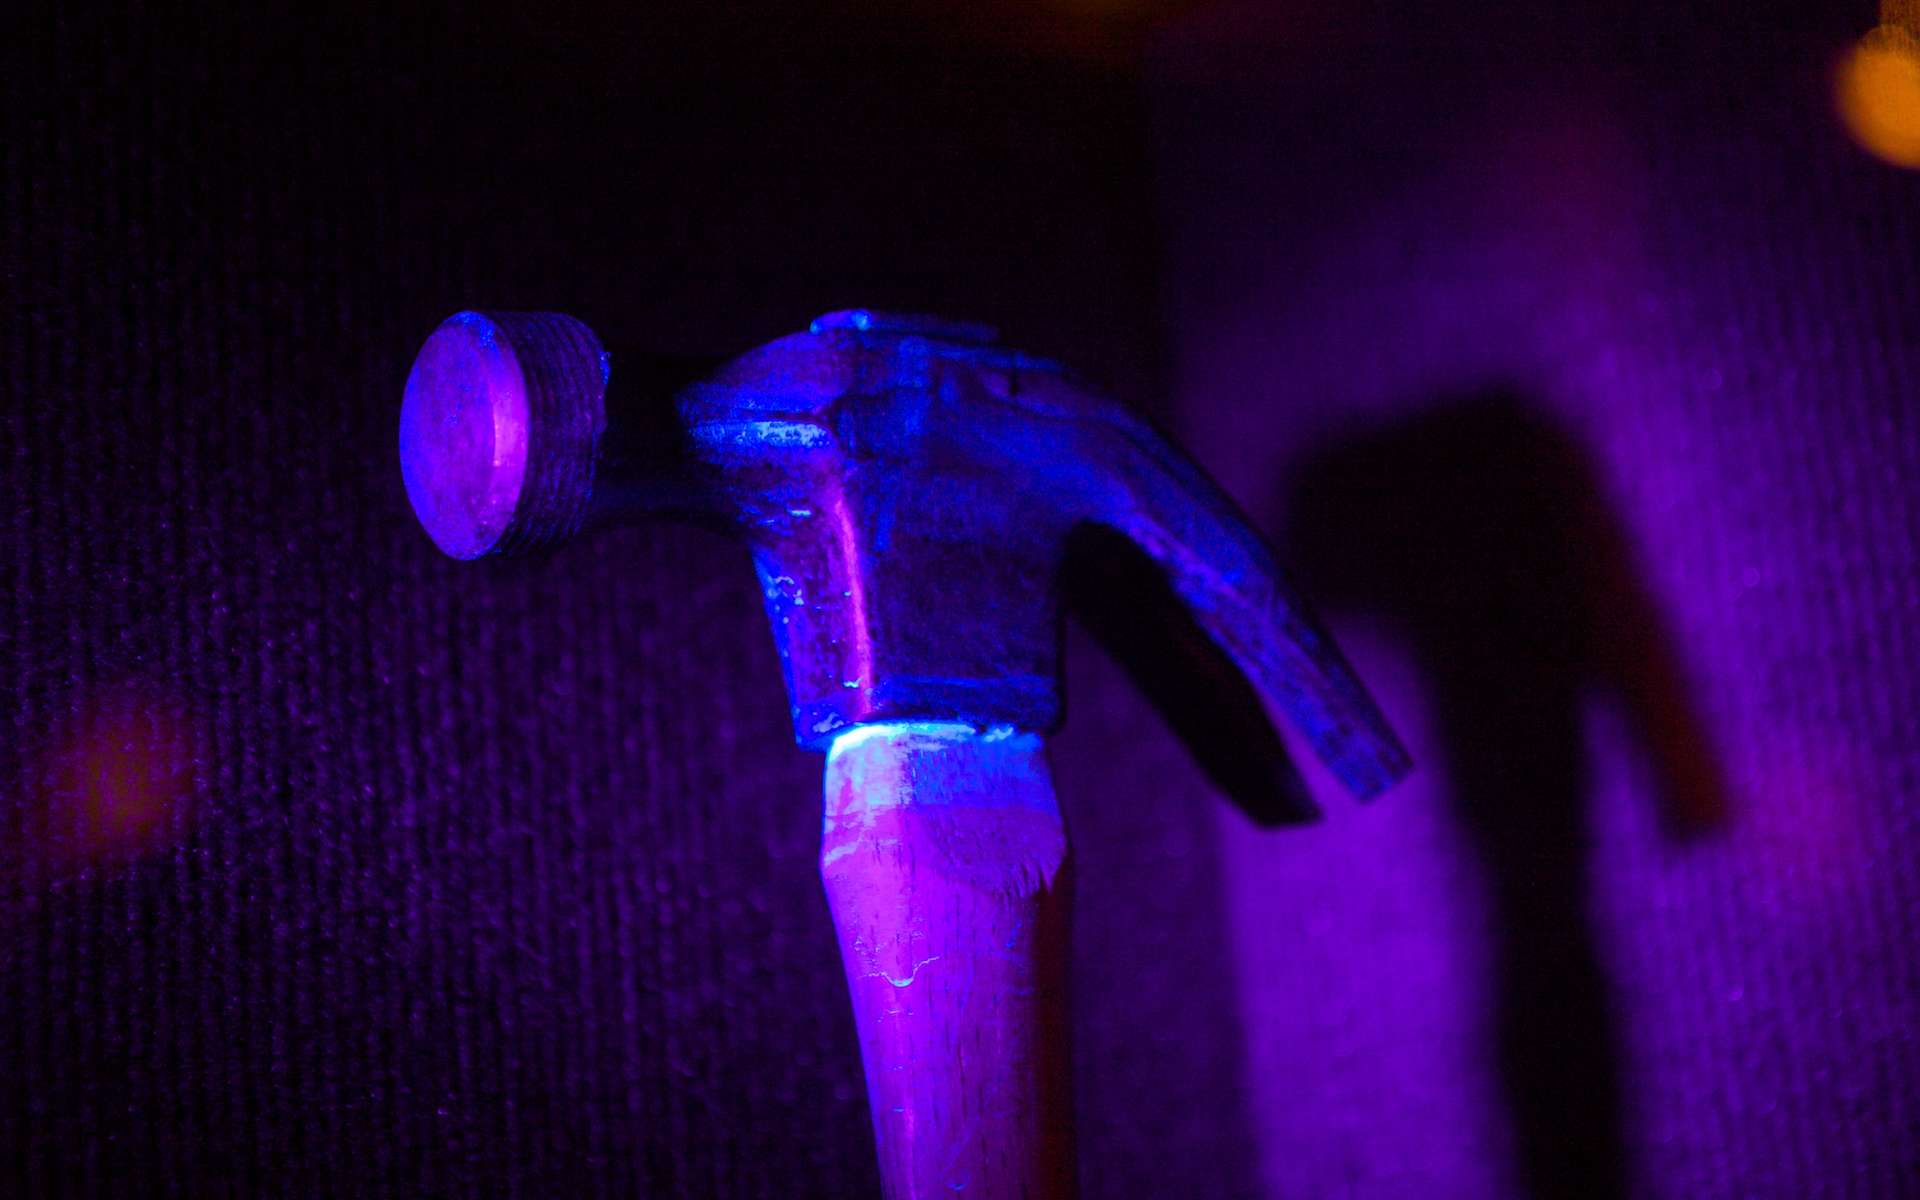 Grâce à sa chimiluminescence, le luminol révèle des traces de sang sur ce marteau. © Marcin Wichary, Flickr, CC by 2.0